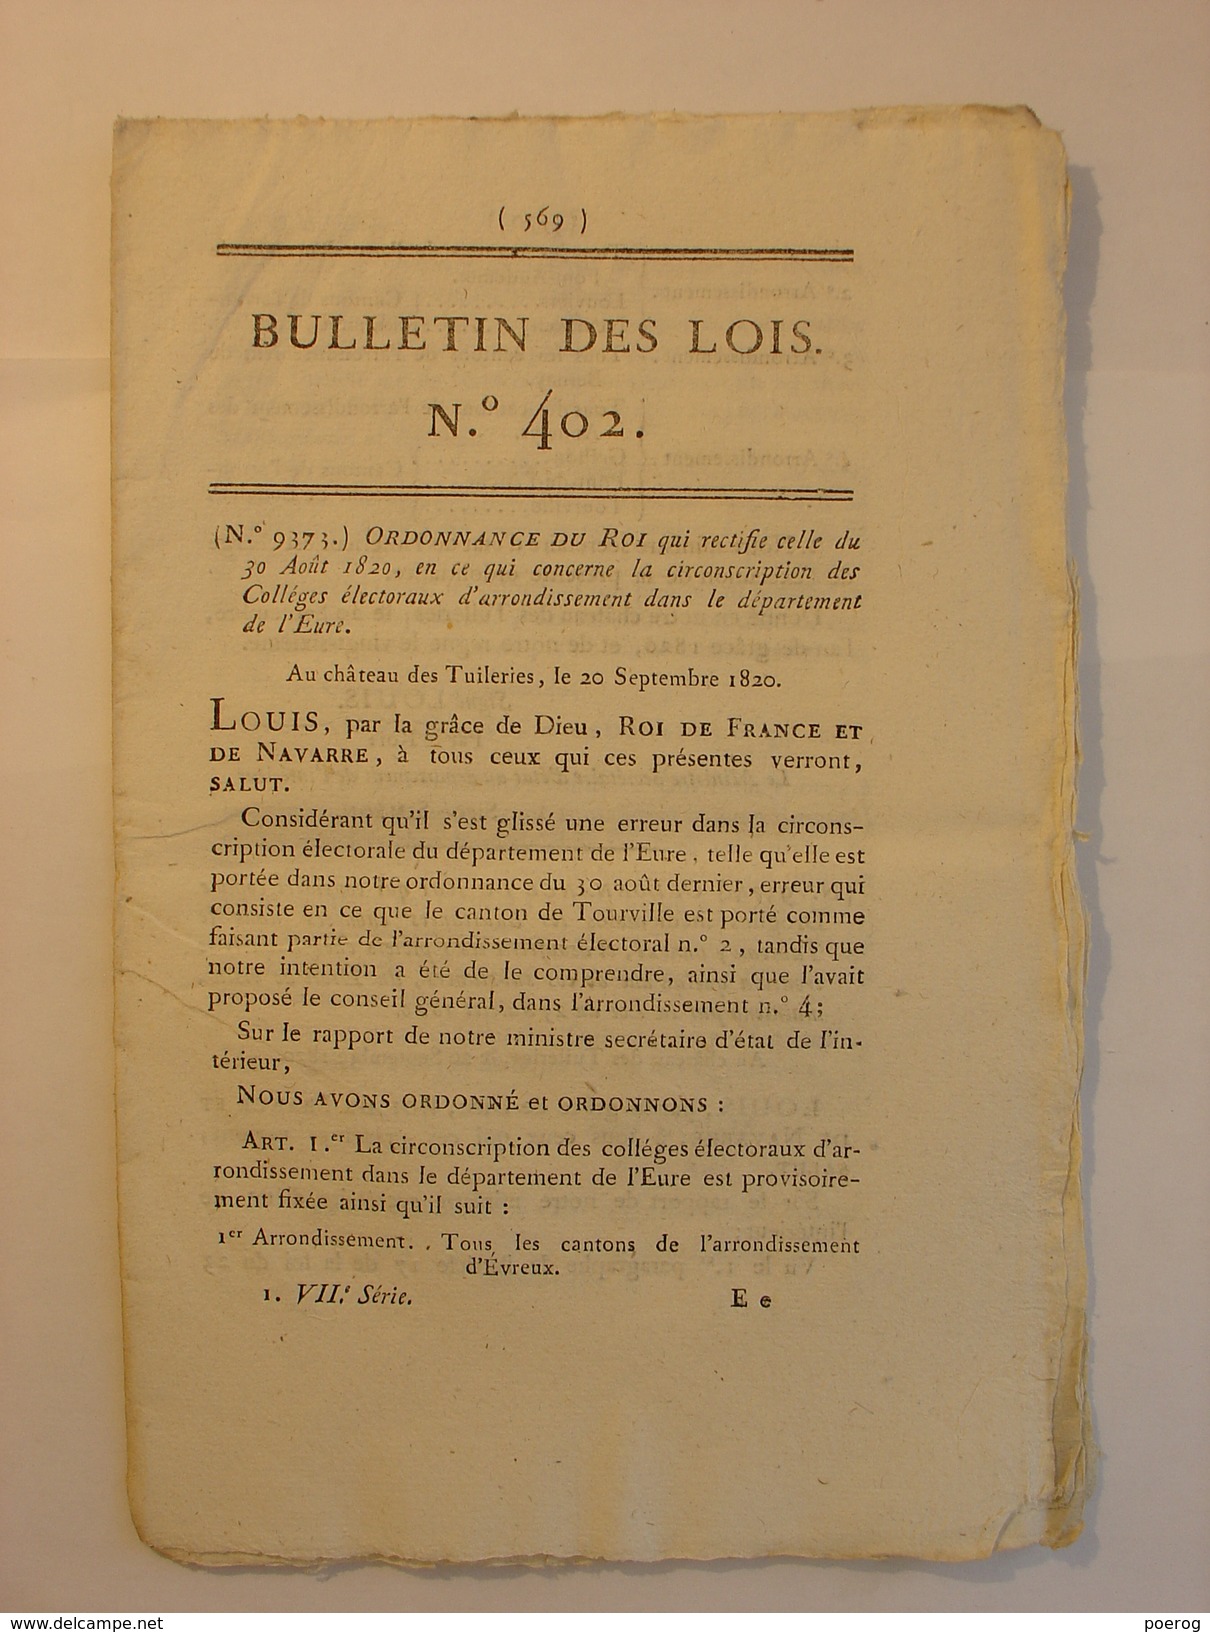 BULLETIN DES LOIS De 1820 - MEDECINE MEDICAMENT LISTE DROGUES MEDICINALES - ARCHEVEQUES BOURGES TOULOUSE EVEQUE SOISSONS - Decretos & Leyes